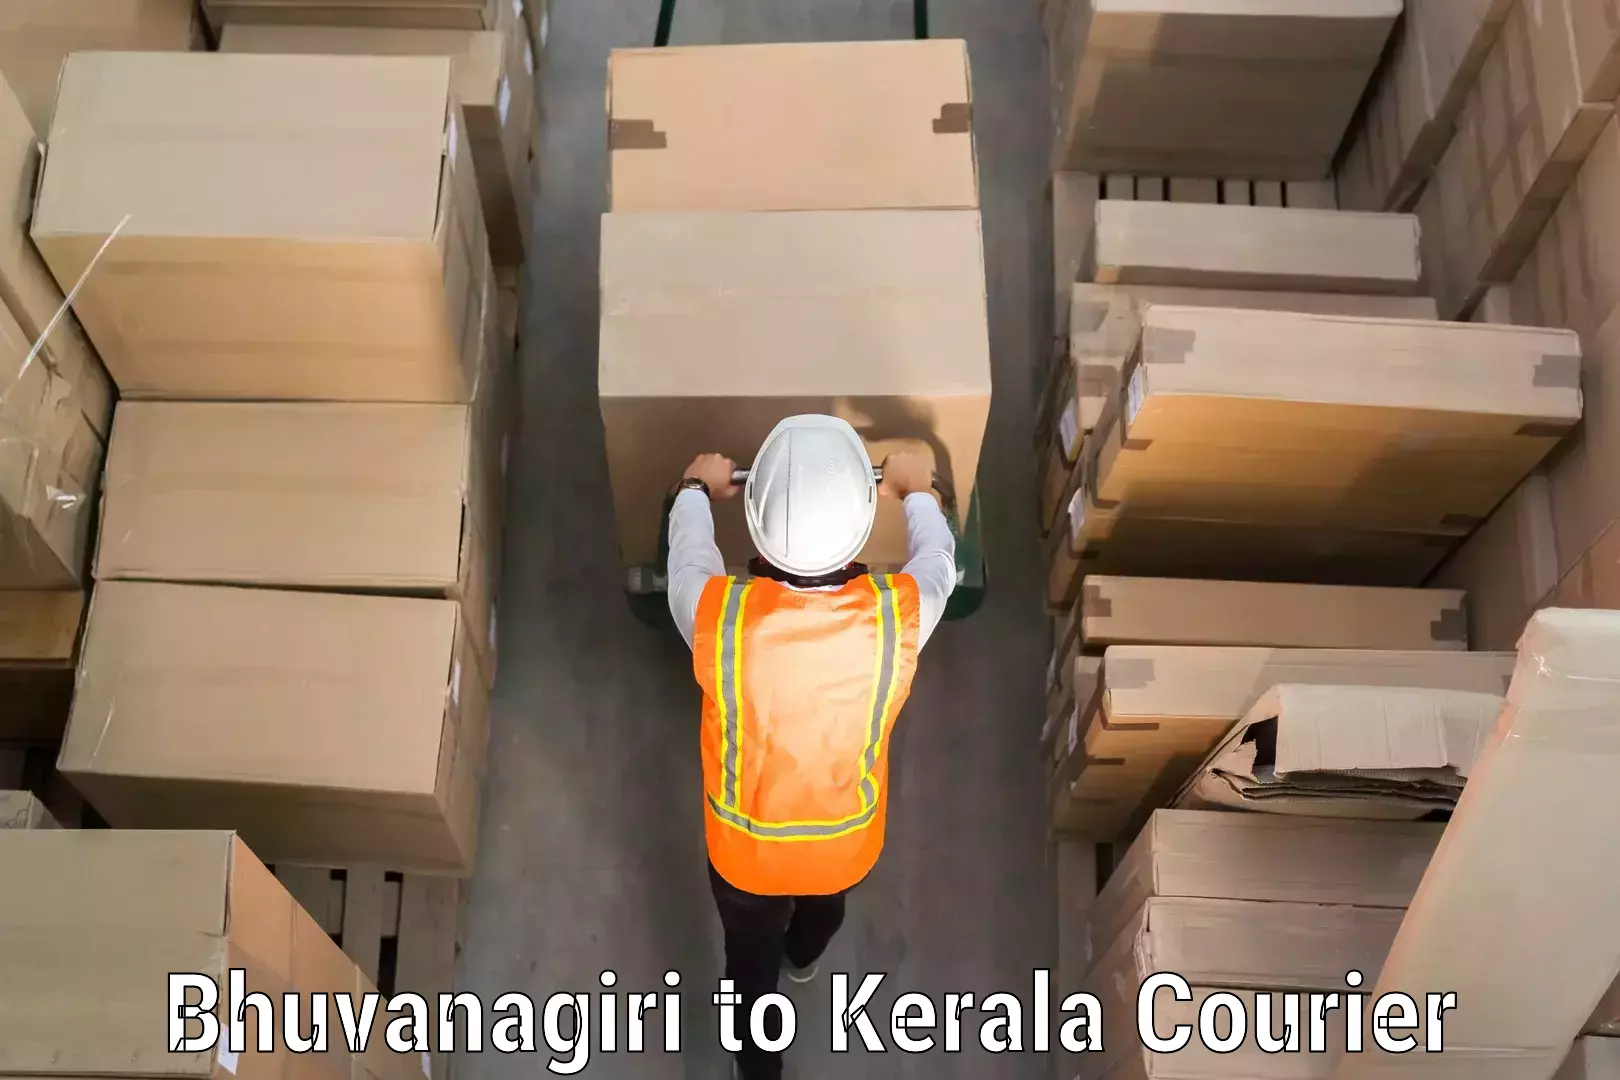 Digital baggage courier Bhuvanagiri to Kattappana